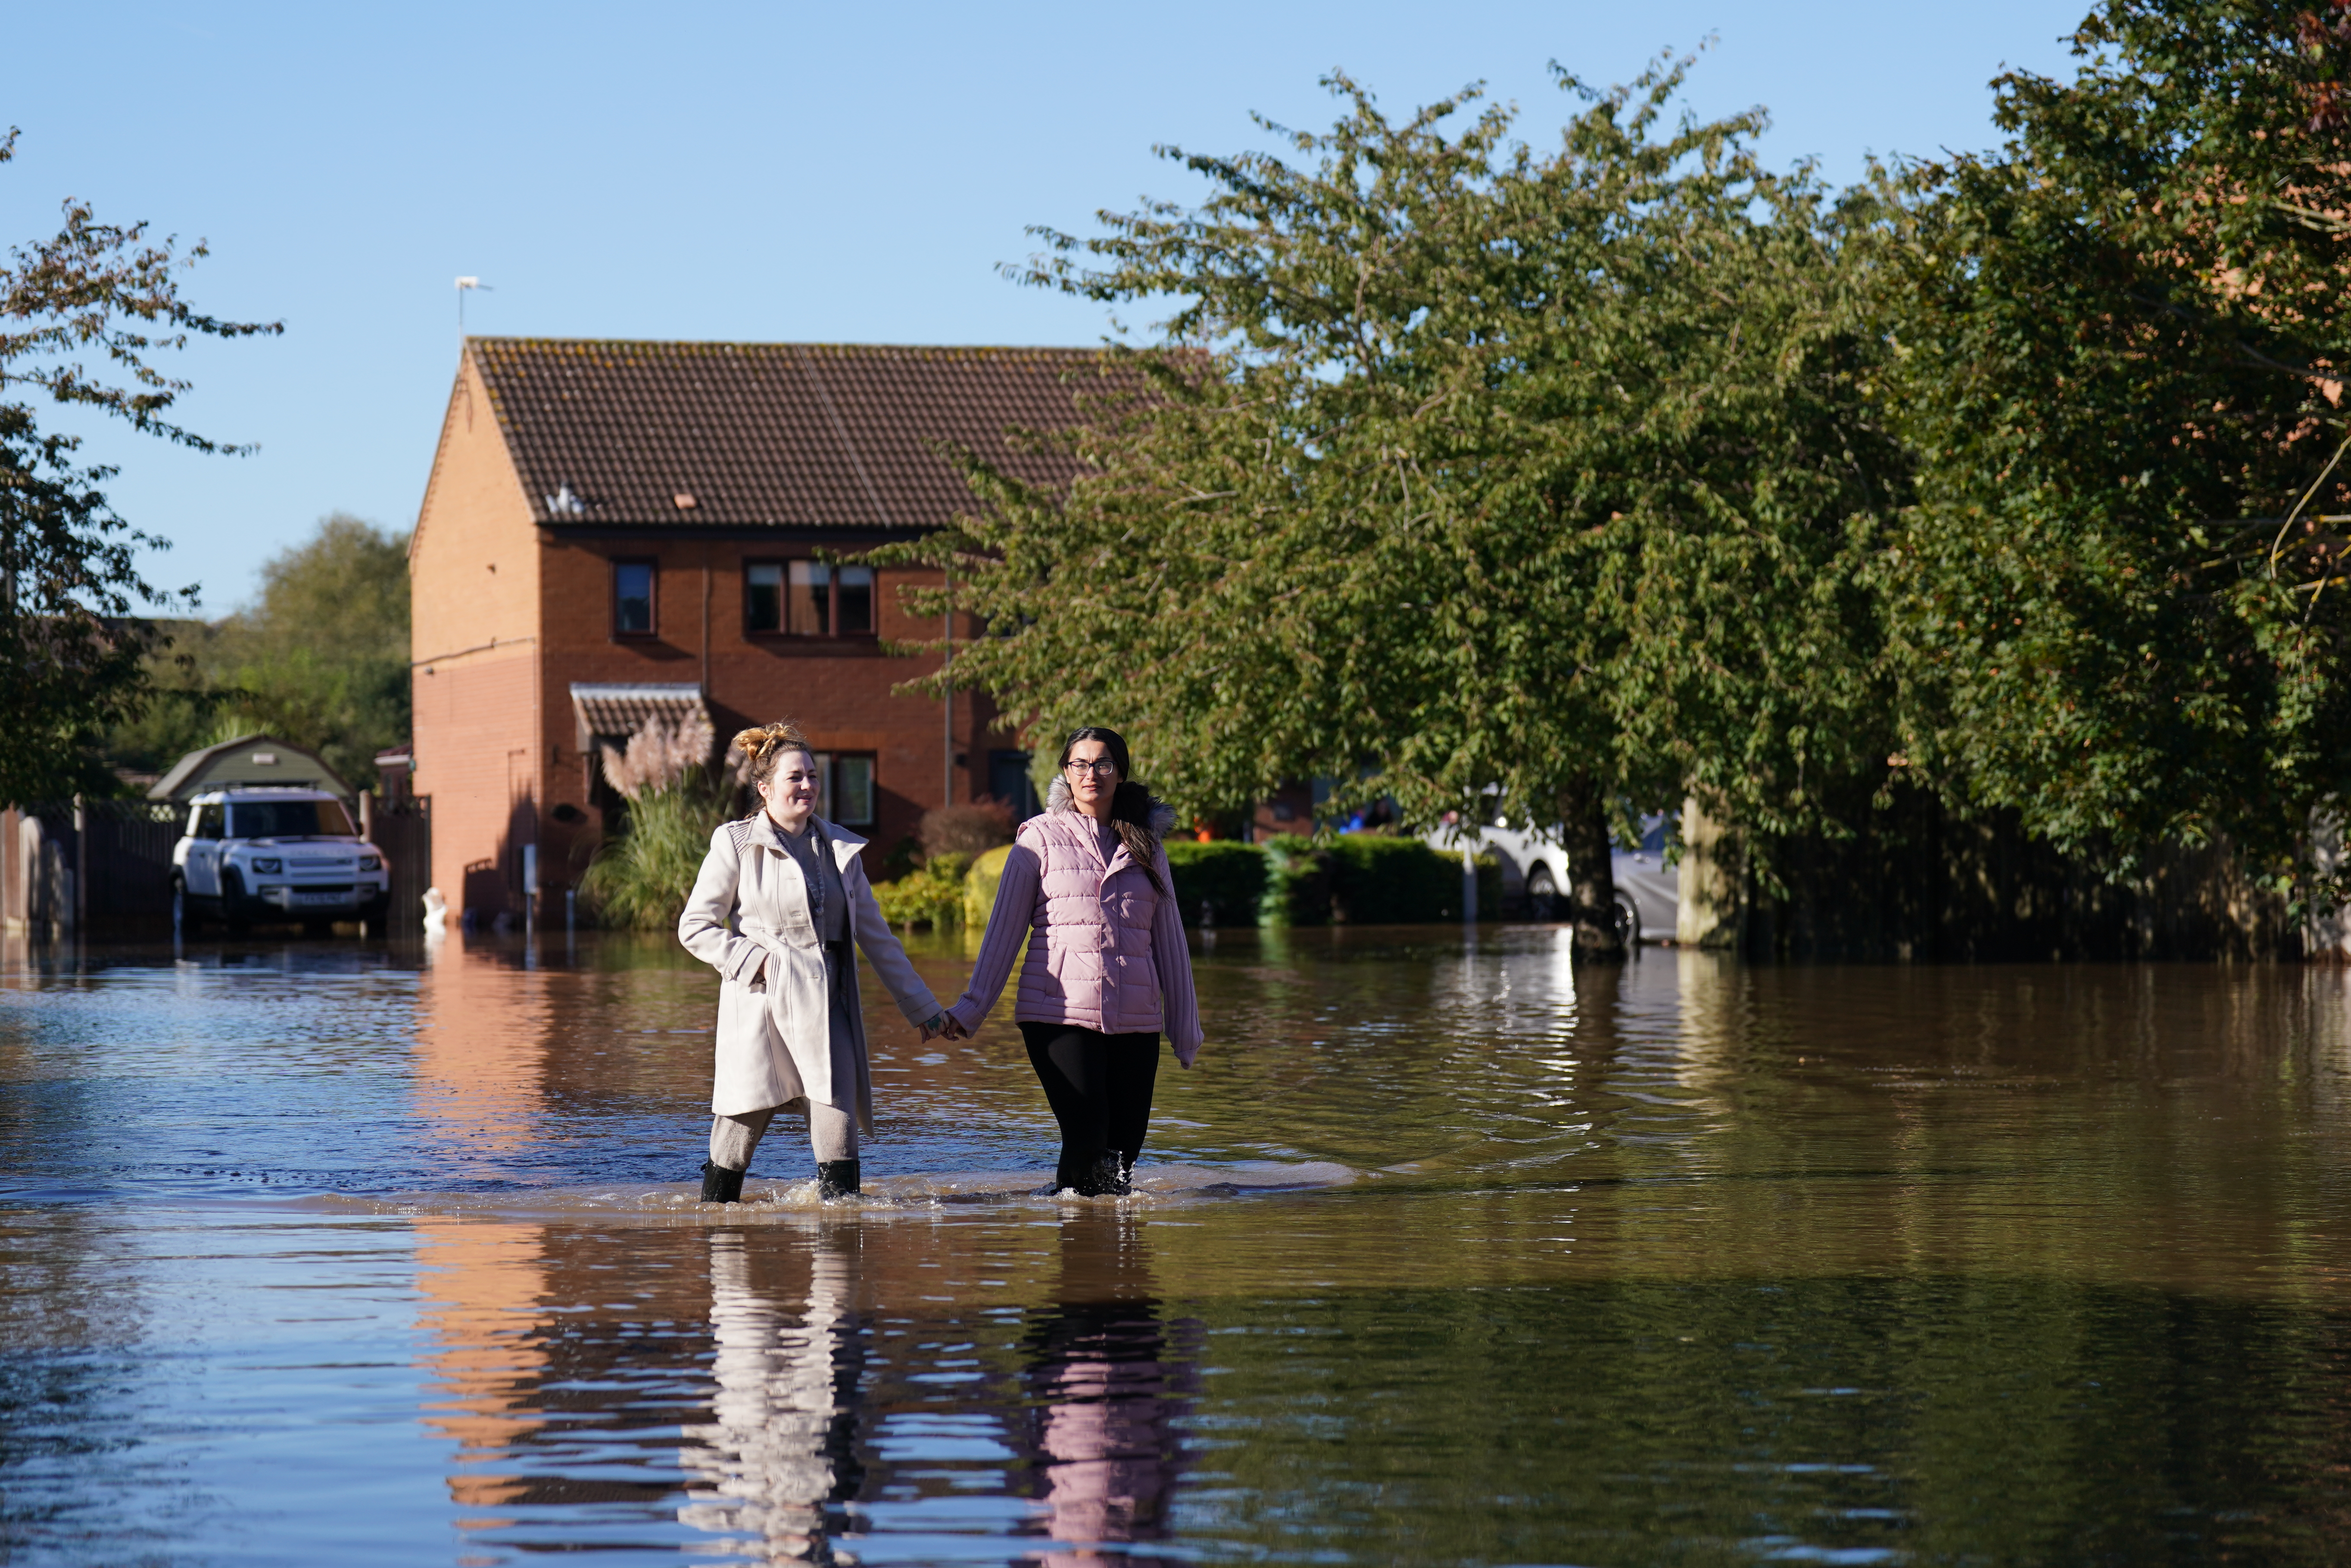 Überschwemmung in Retford in Nottinghamshire, nachdem Sturm Babet Großbritannien heimgesucht hatte